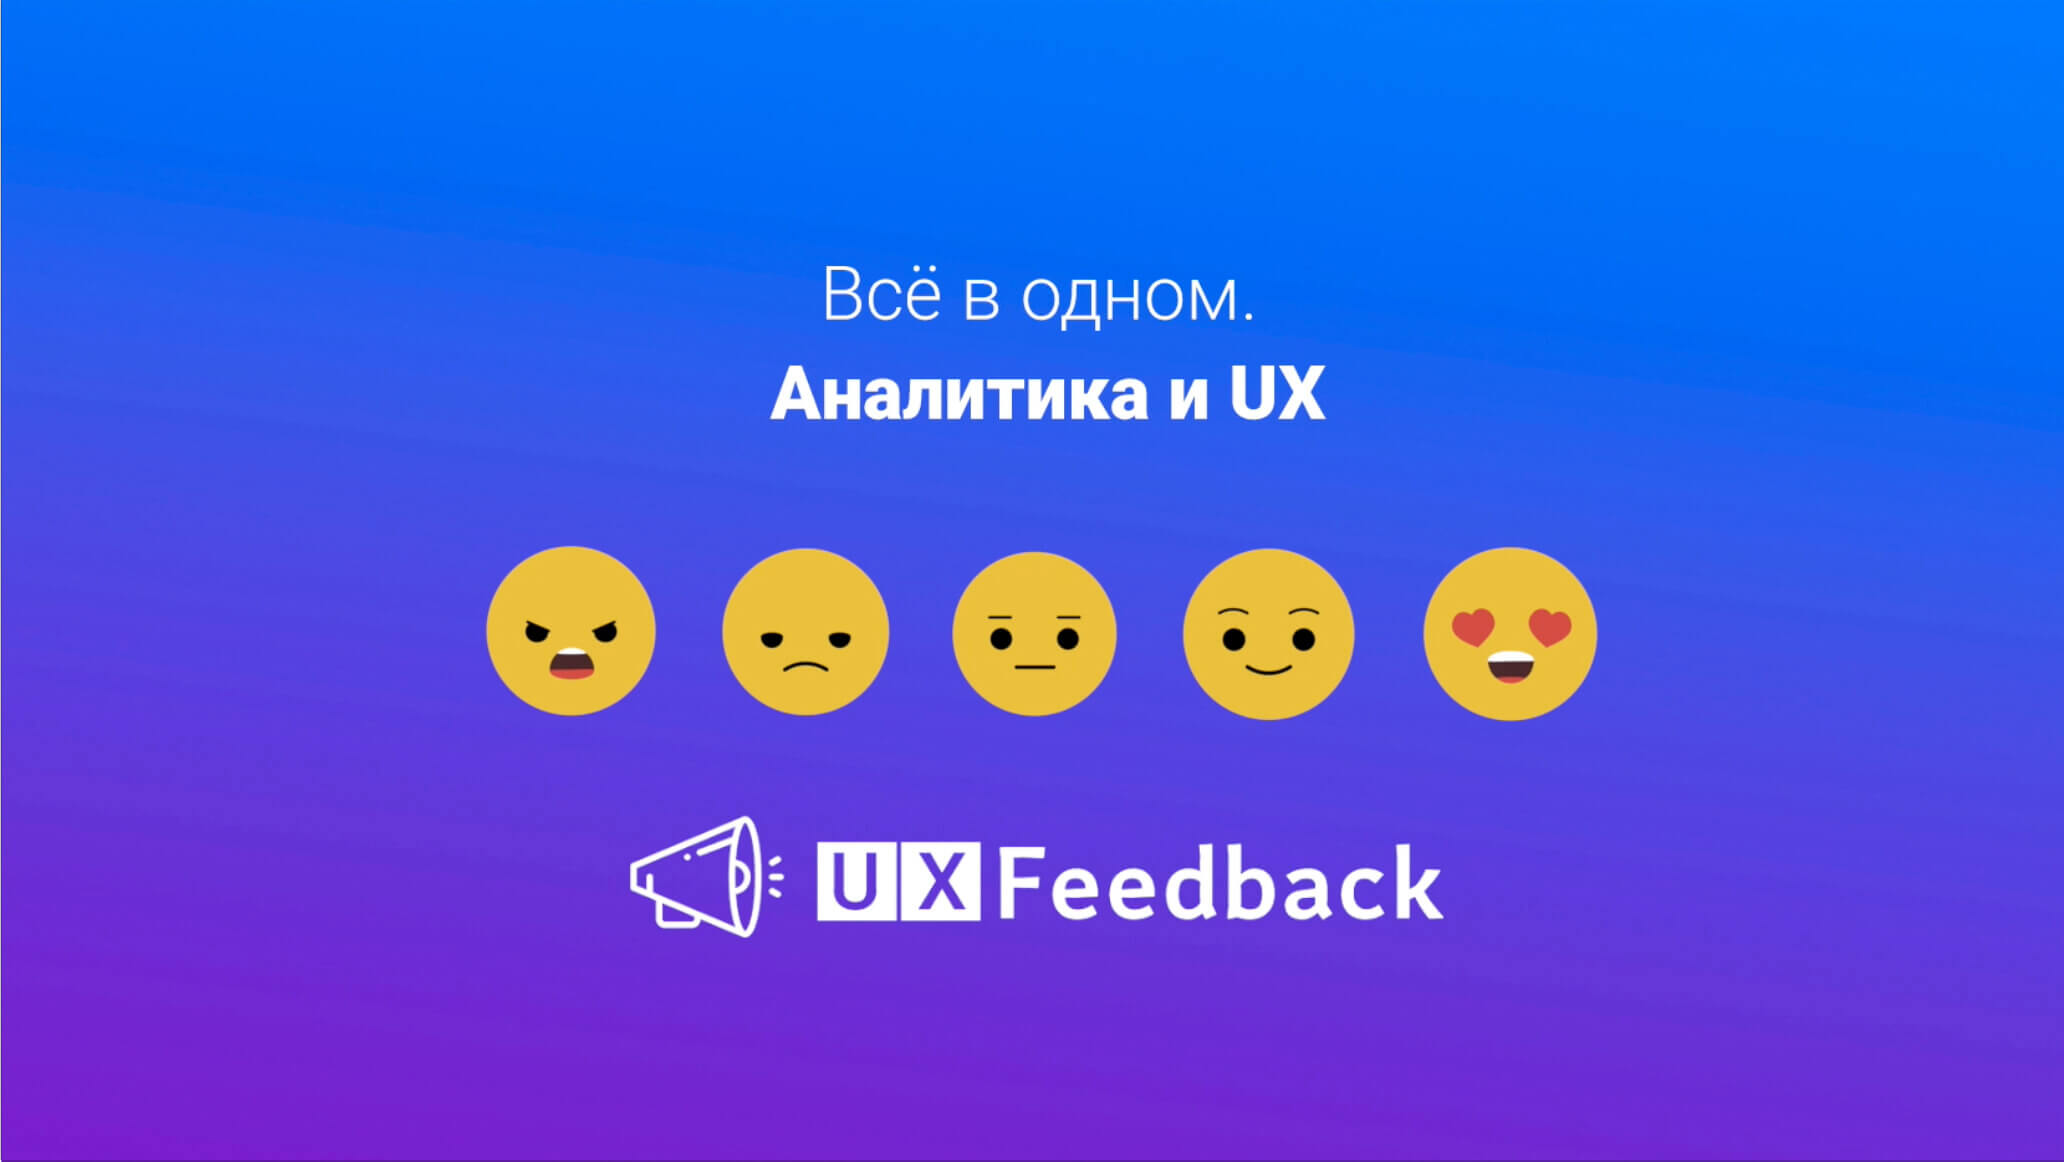 UX Feedback – как перестать строить гипотезы и начать прислушиваться к клиентам